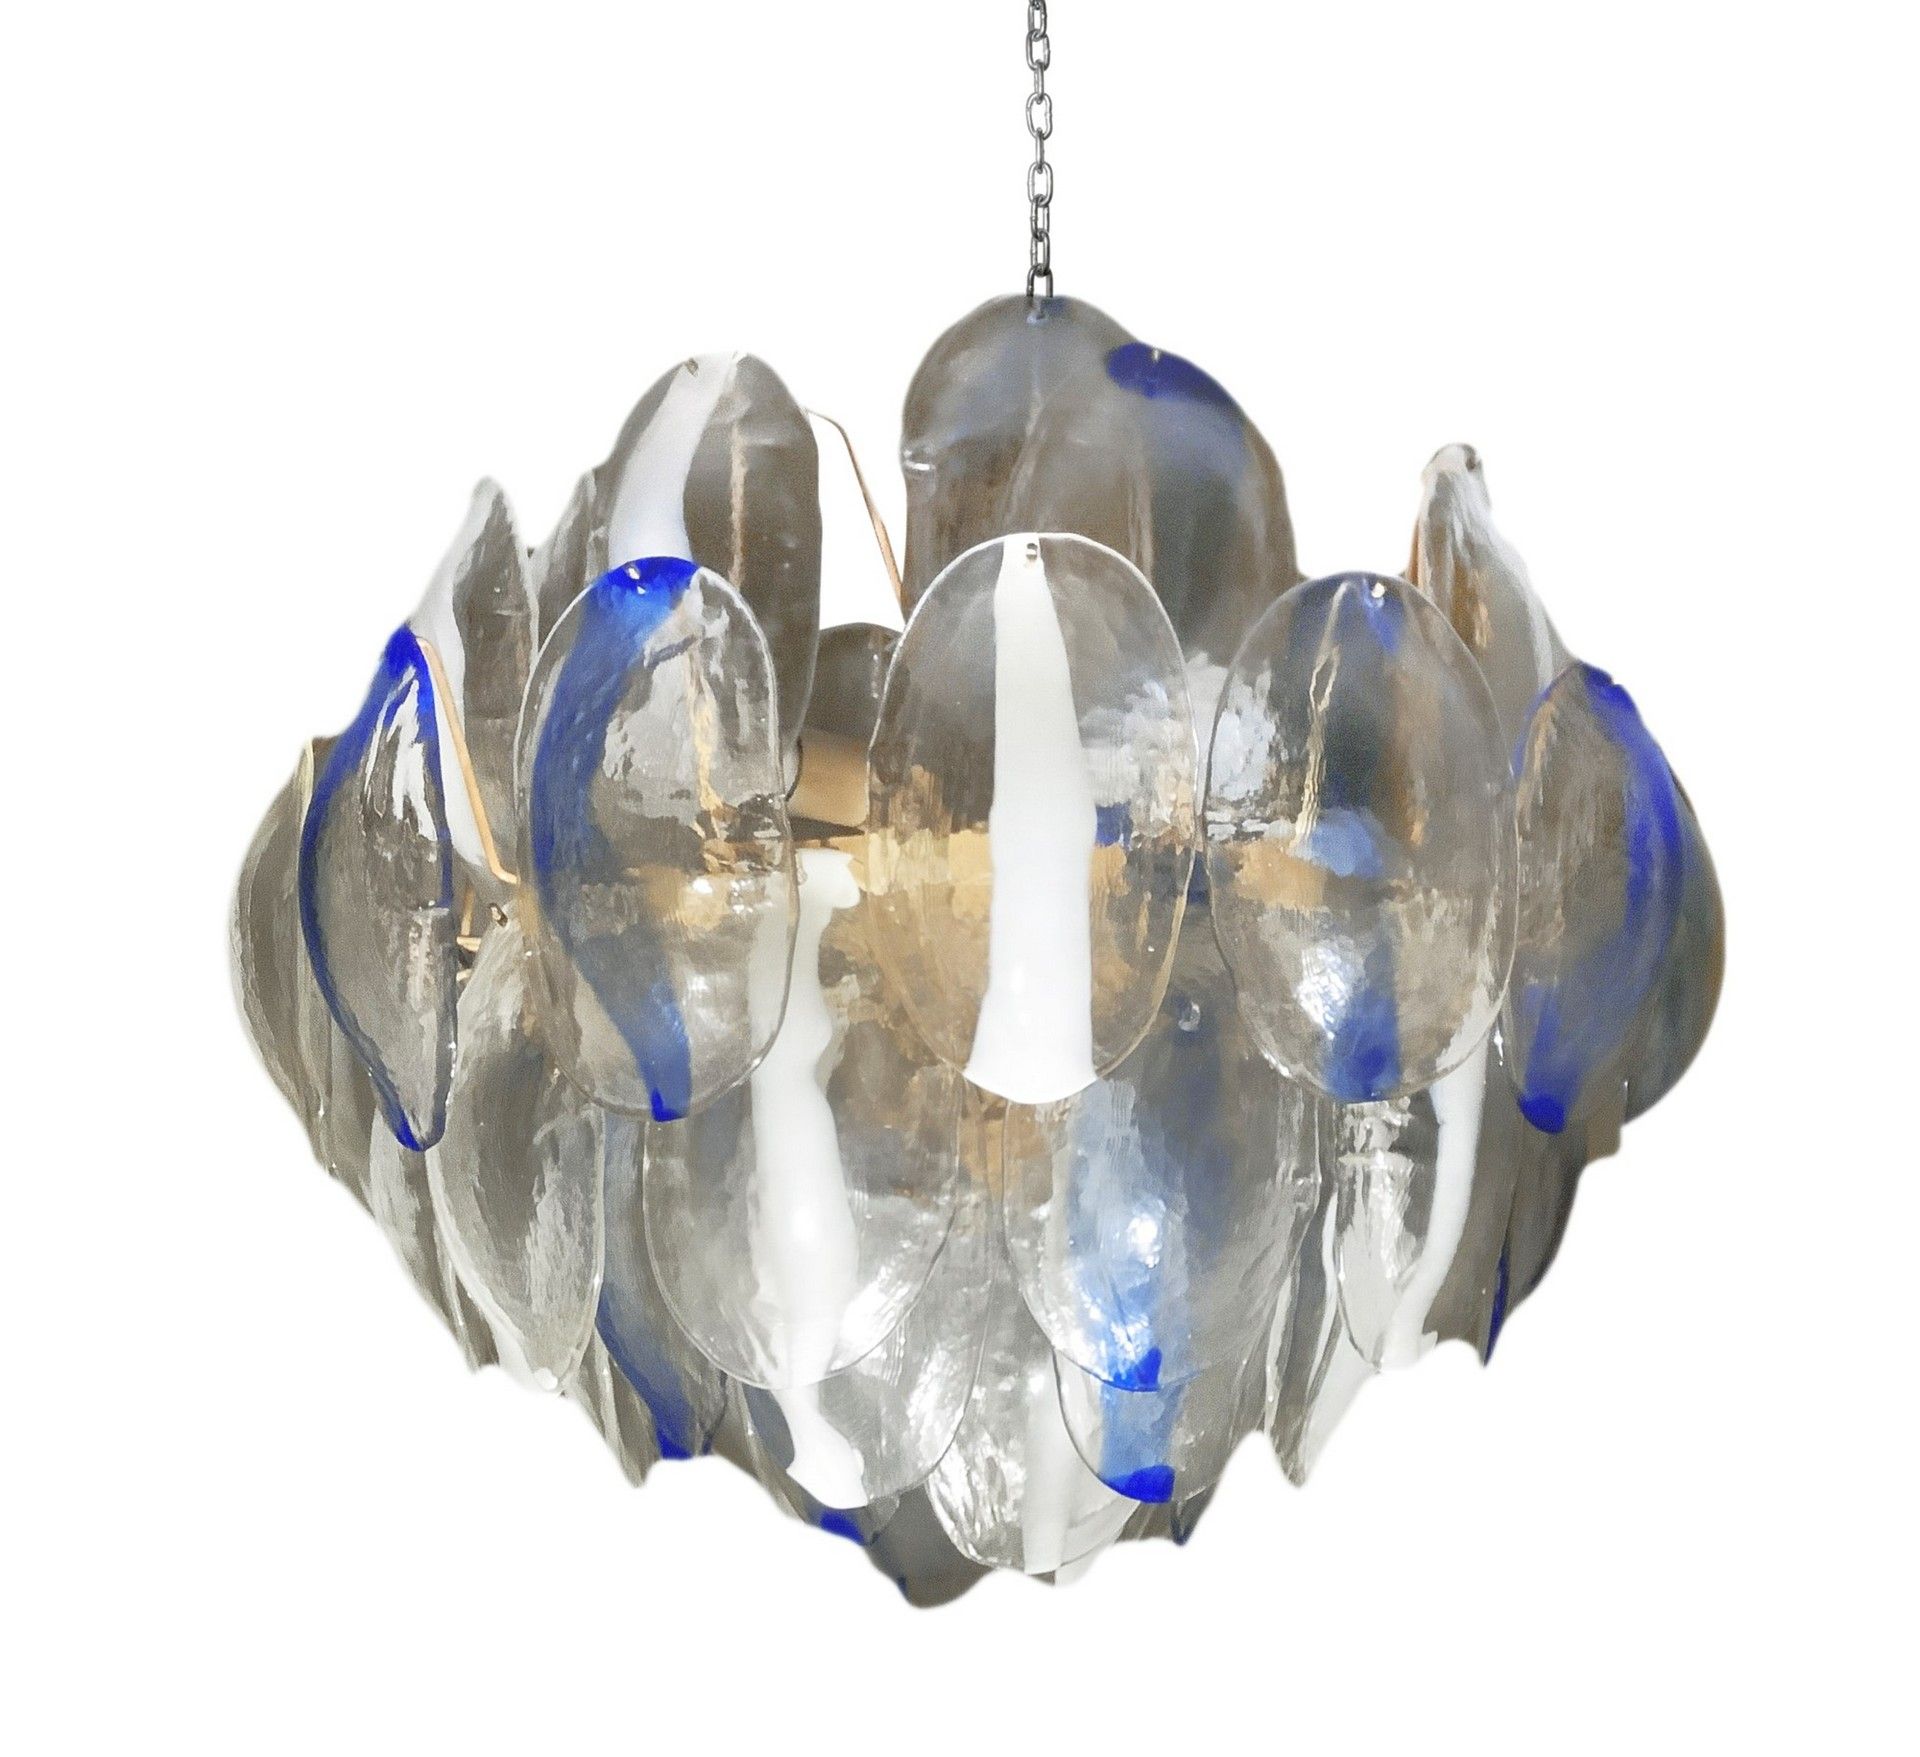 Null 吊灯，带有松果形状的椭圆形彩色玻璃板，高55厘米，长63厘米，马泽加制作。白色漆面金属结构，透明玻璃元素，表面有冰冻效果，内含白色和蓝色色调的玻璃浆，&hellip;